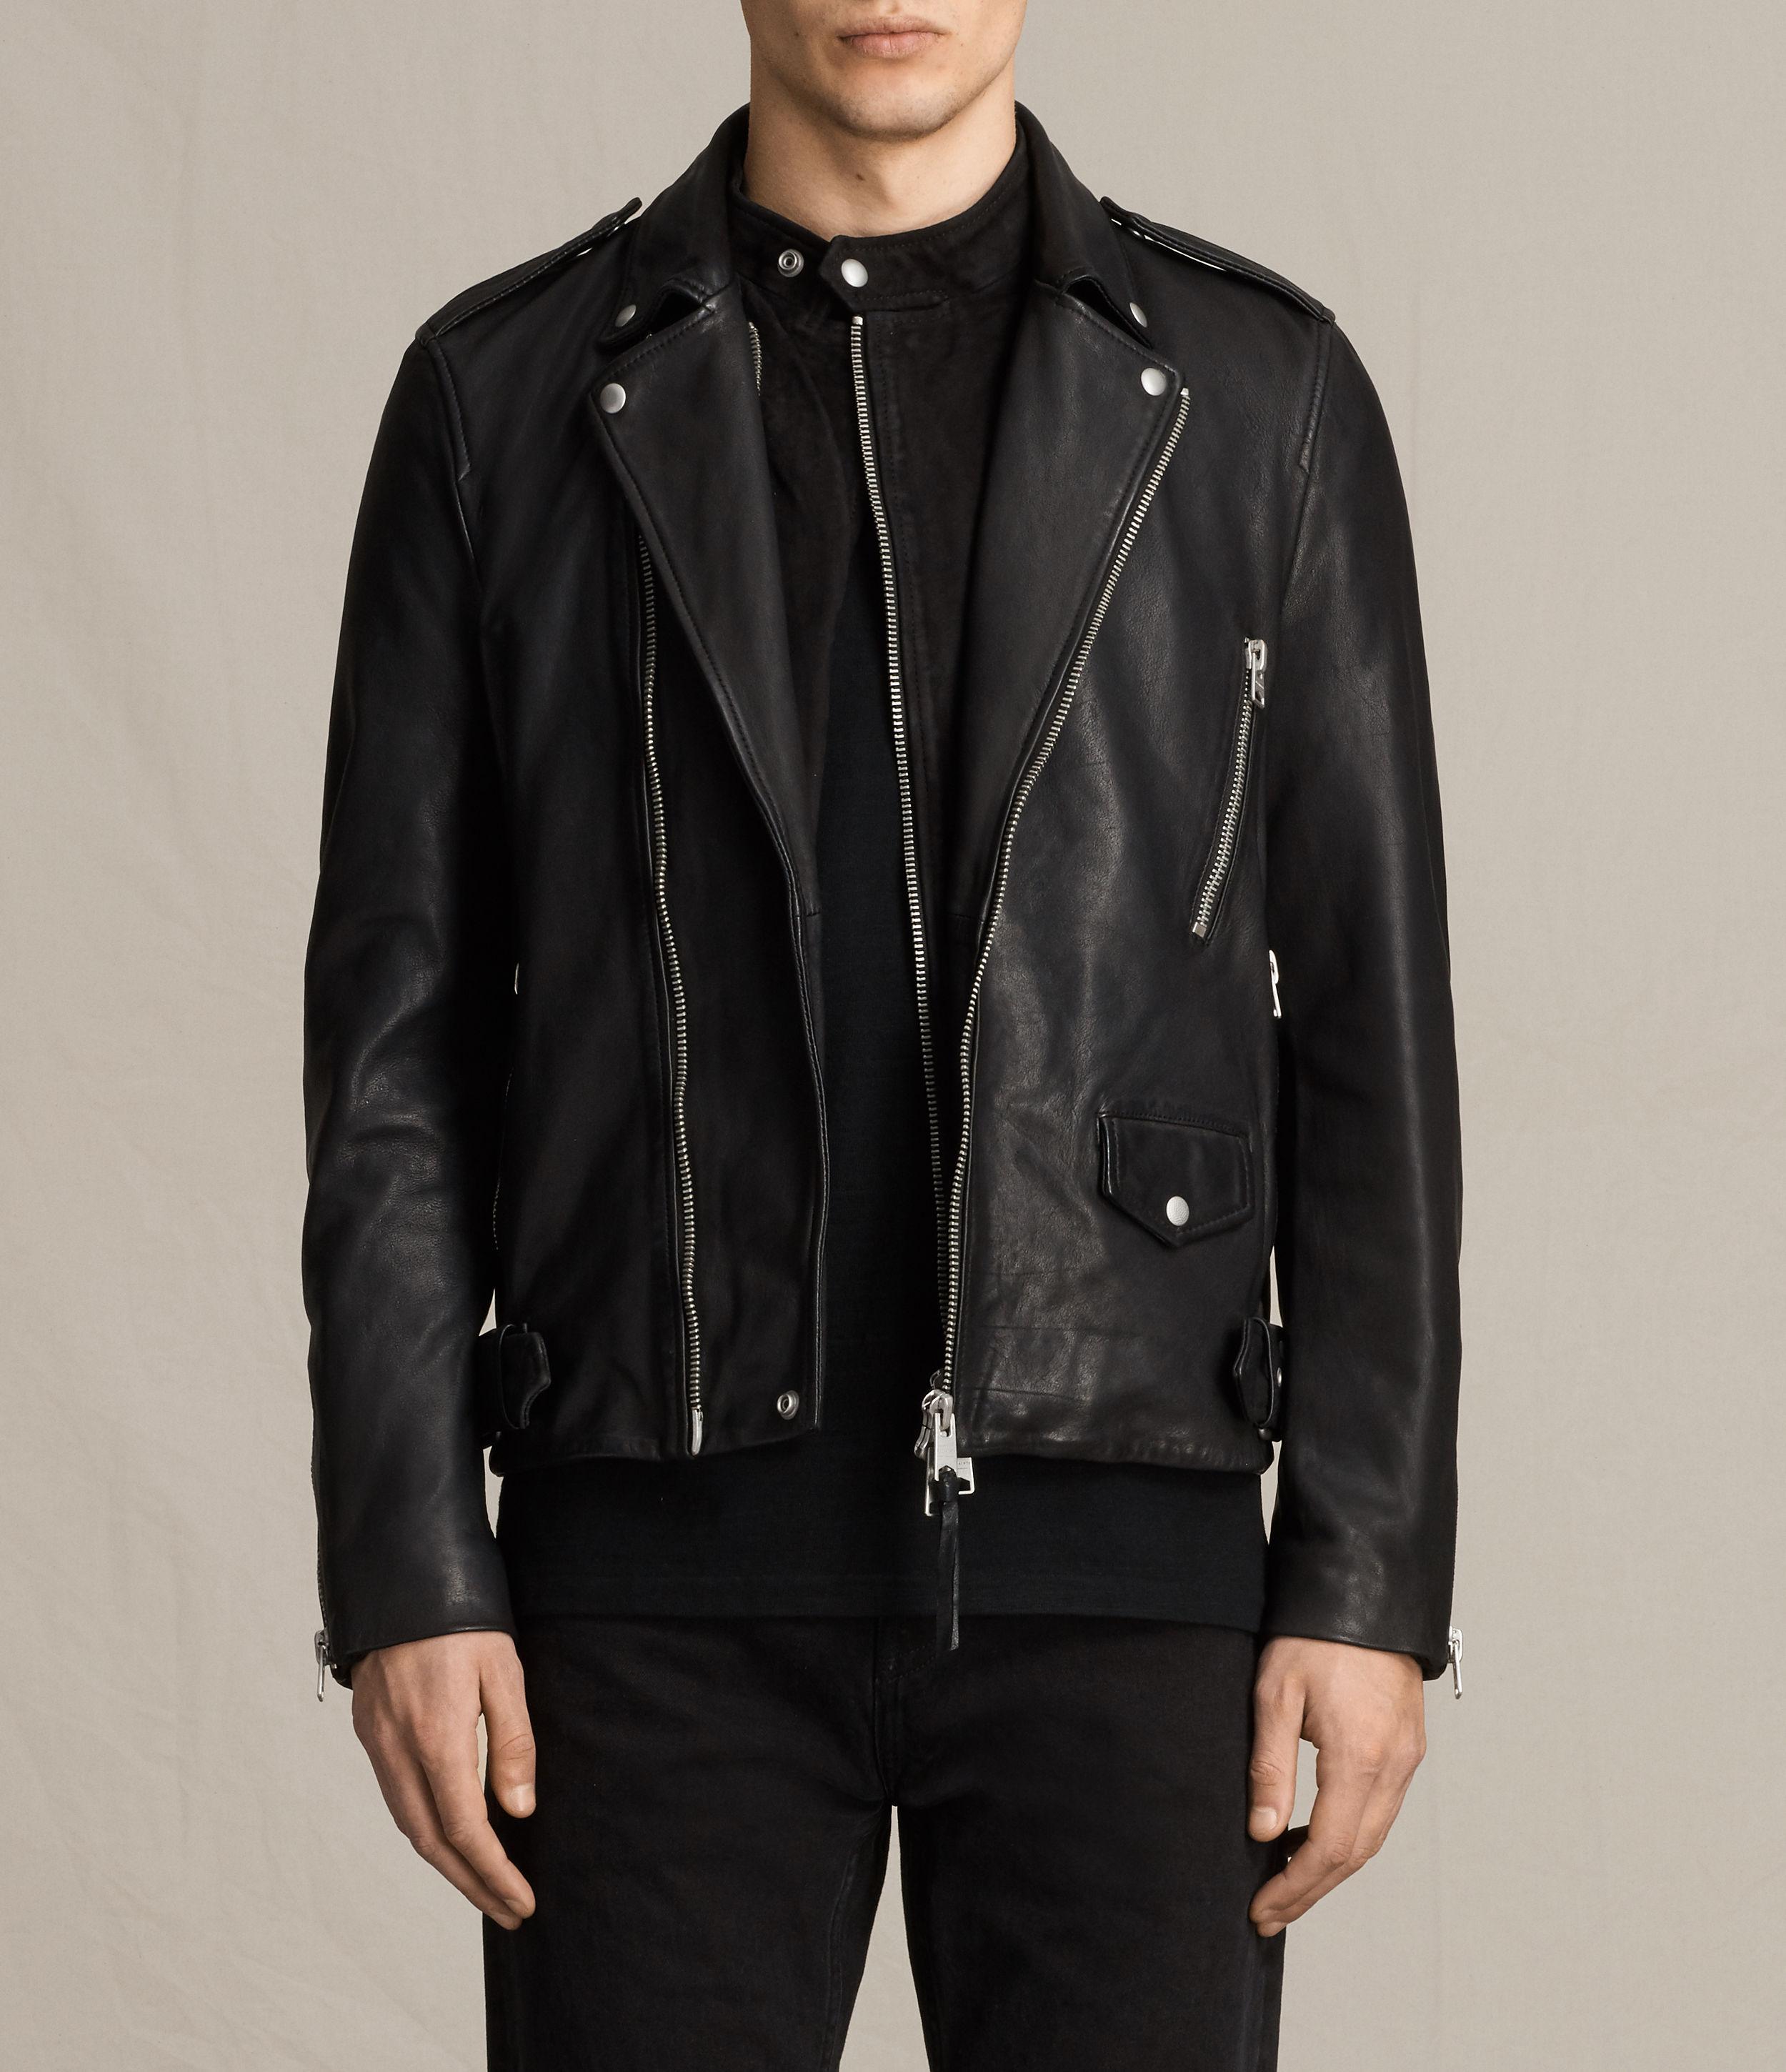 AllSaints Clint Leather Biker Jacket in Black/Washed (Black) for Men - Lyst